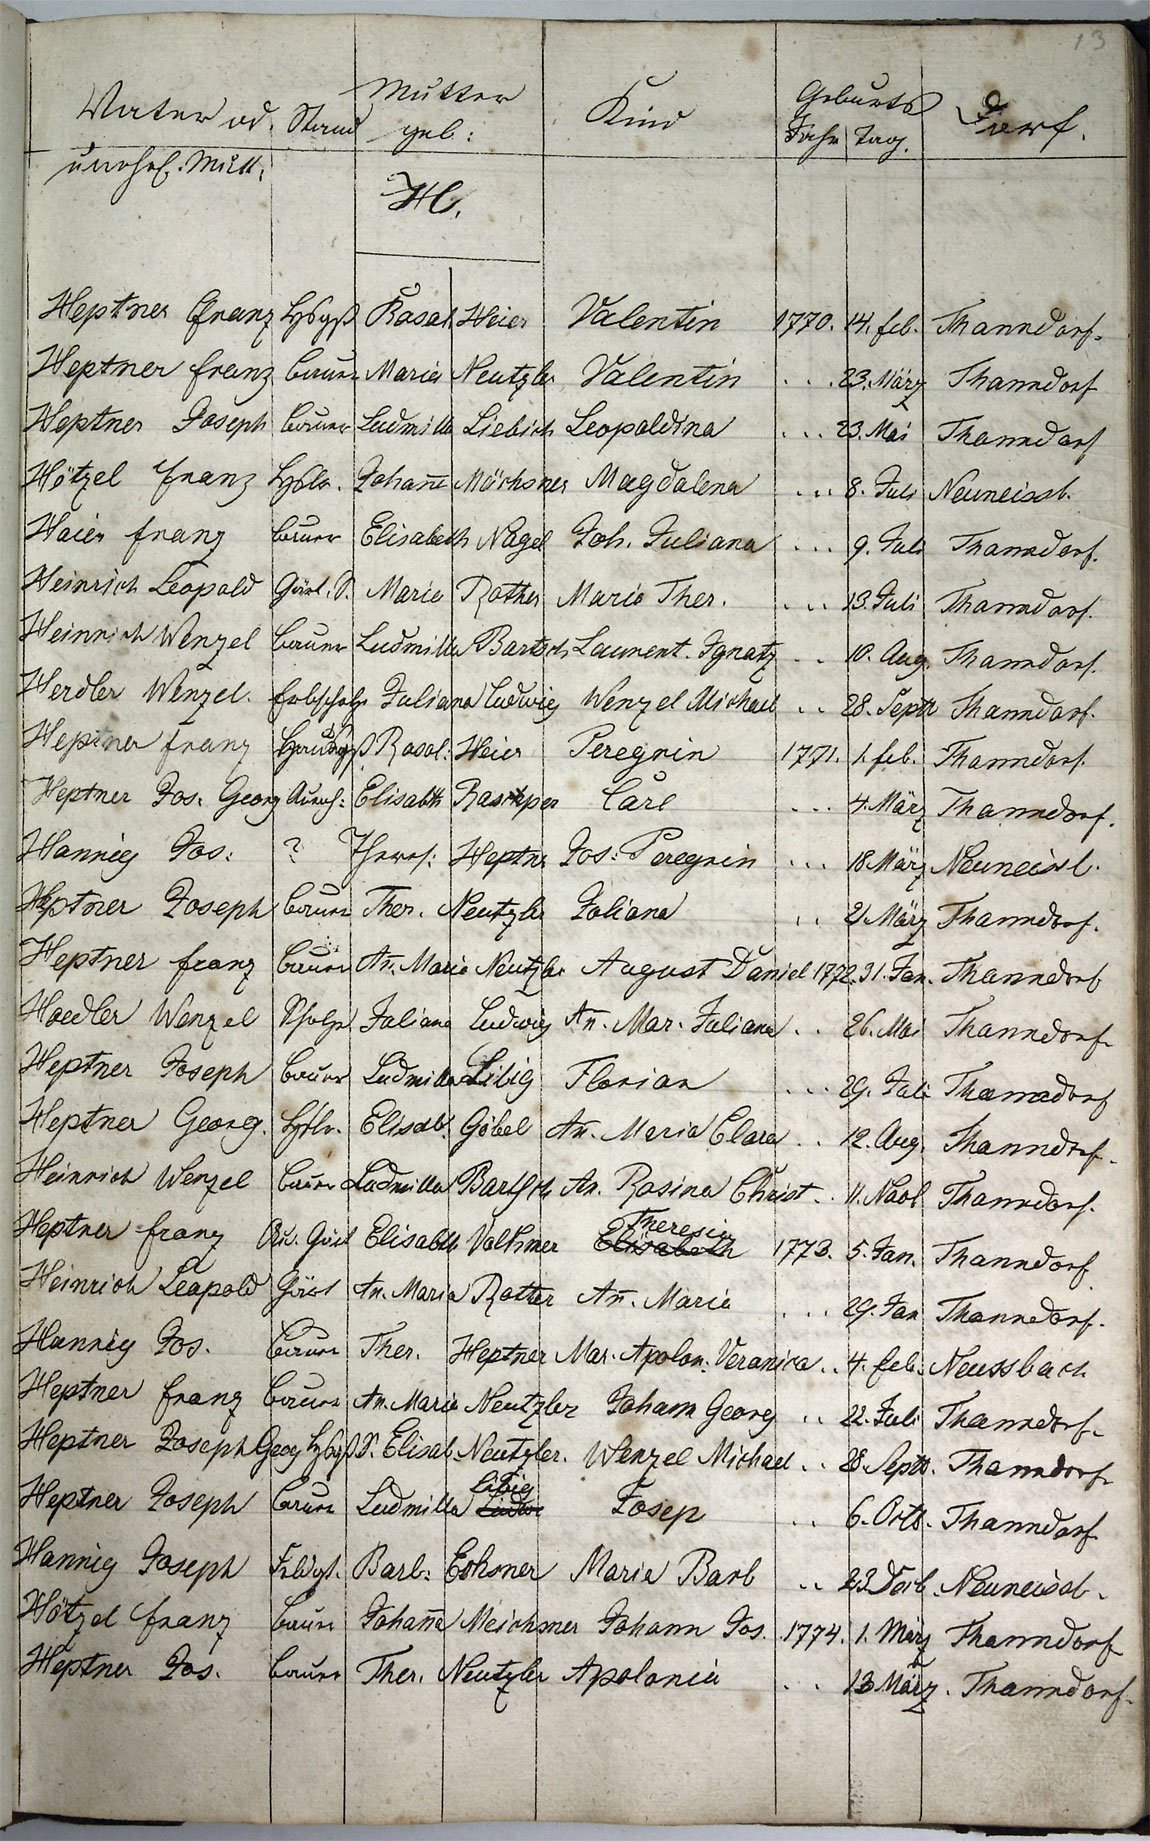 Taufregister 1770 - 1889 Seite 46